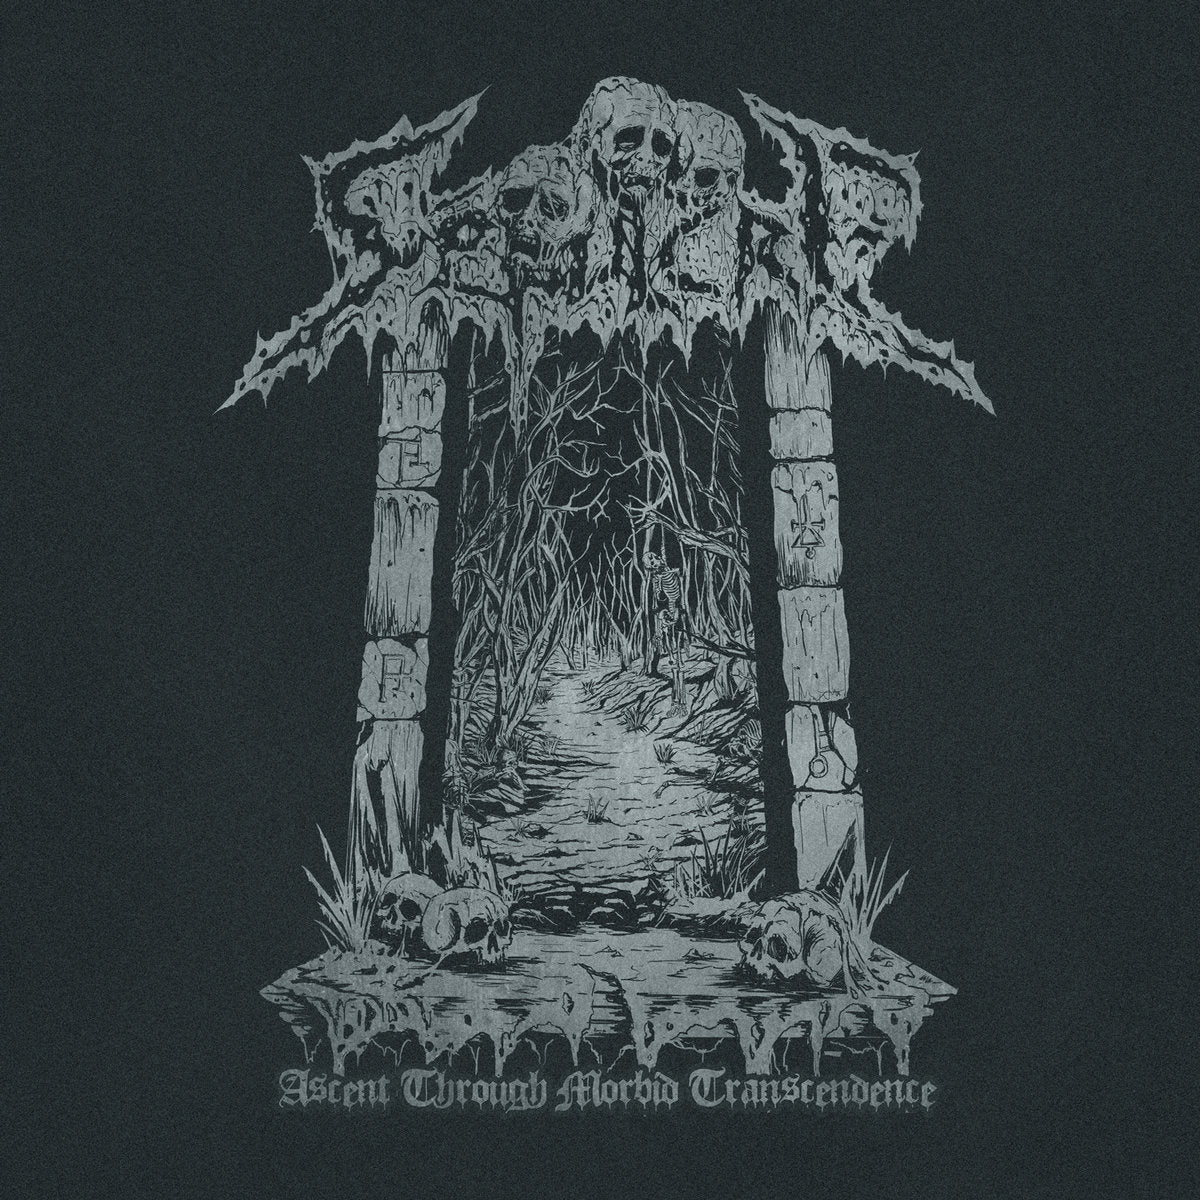 Sépulcre - Ascent Through Morbid Transcendence Vinyl - 33RPM